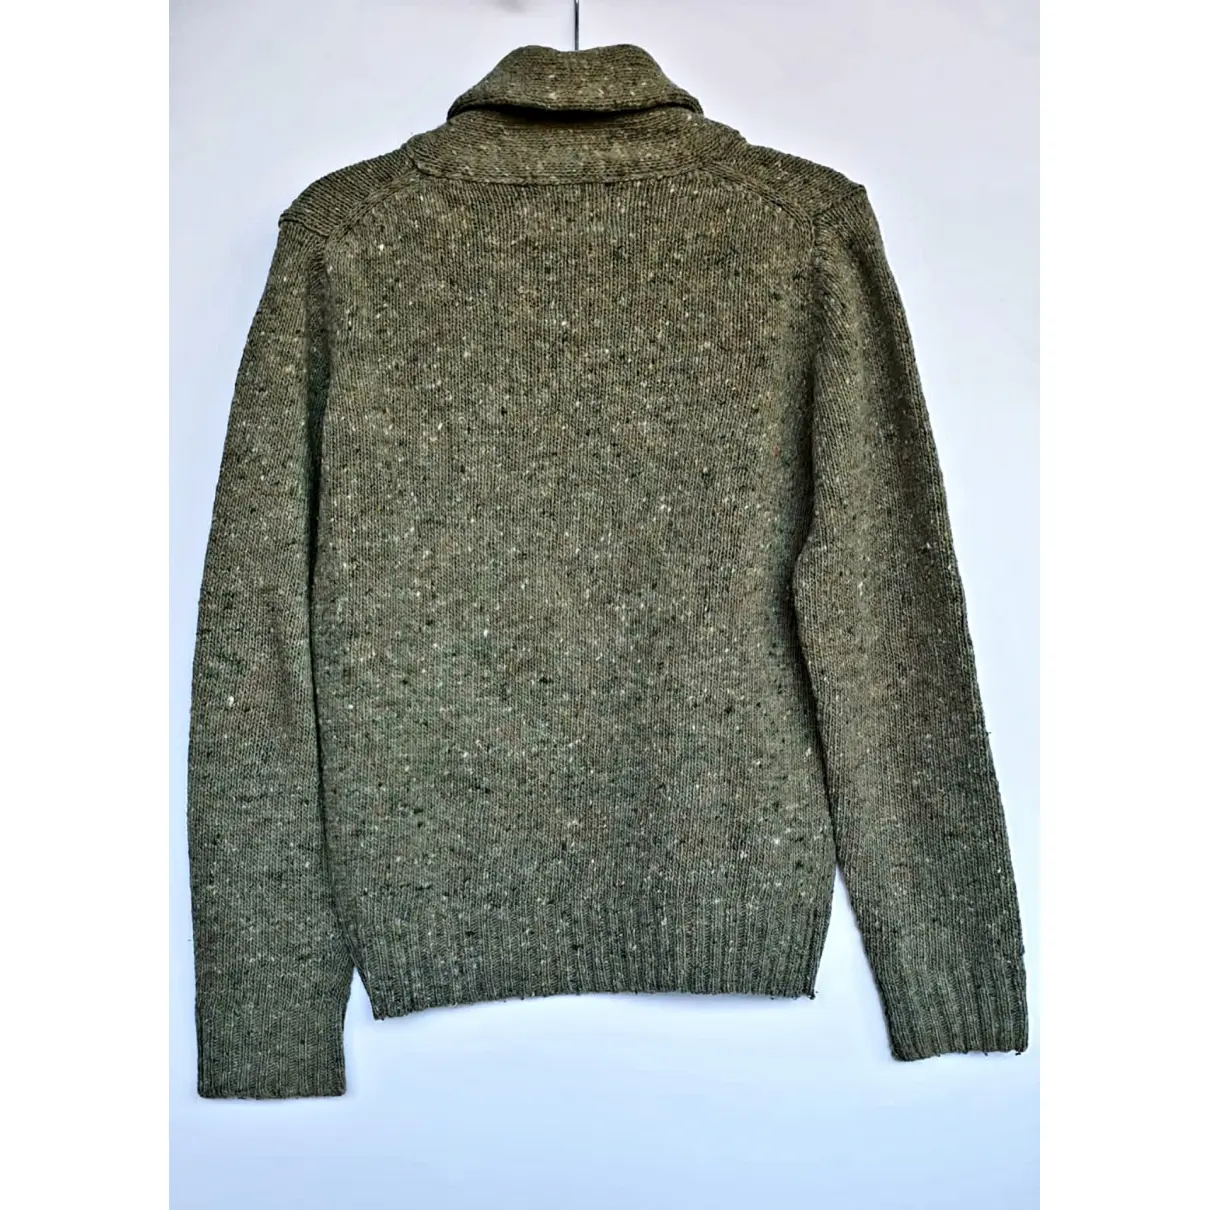 Buy Woolrich Wool sweater online